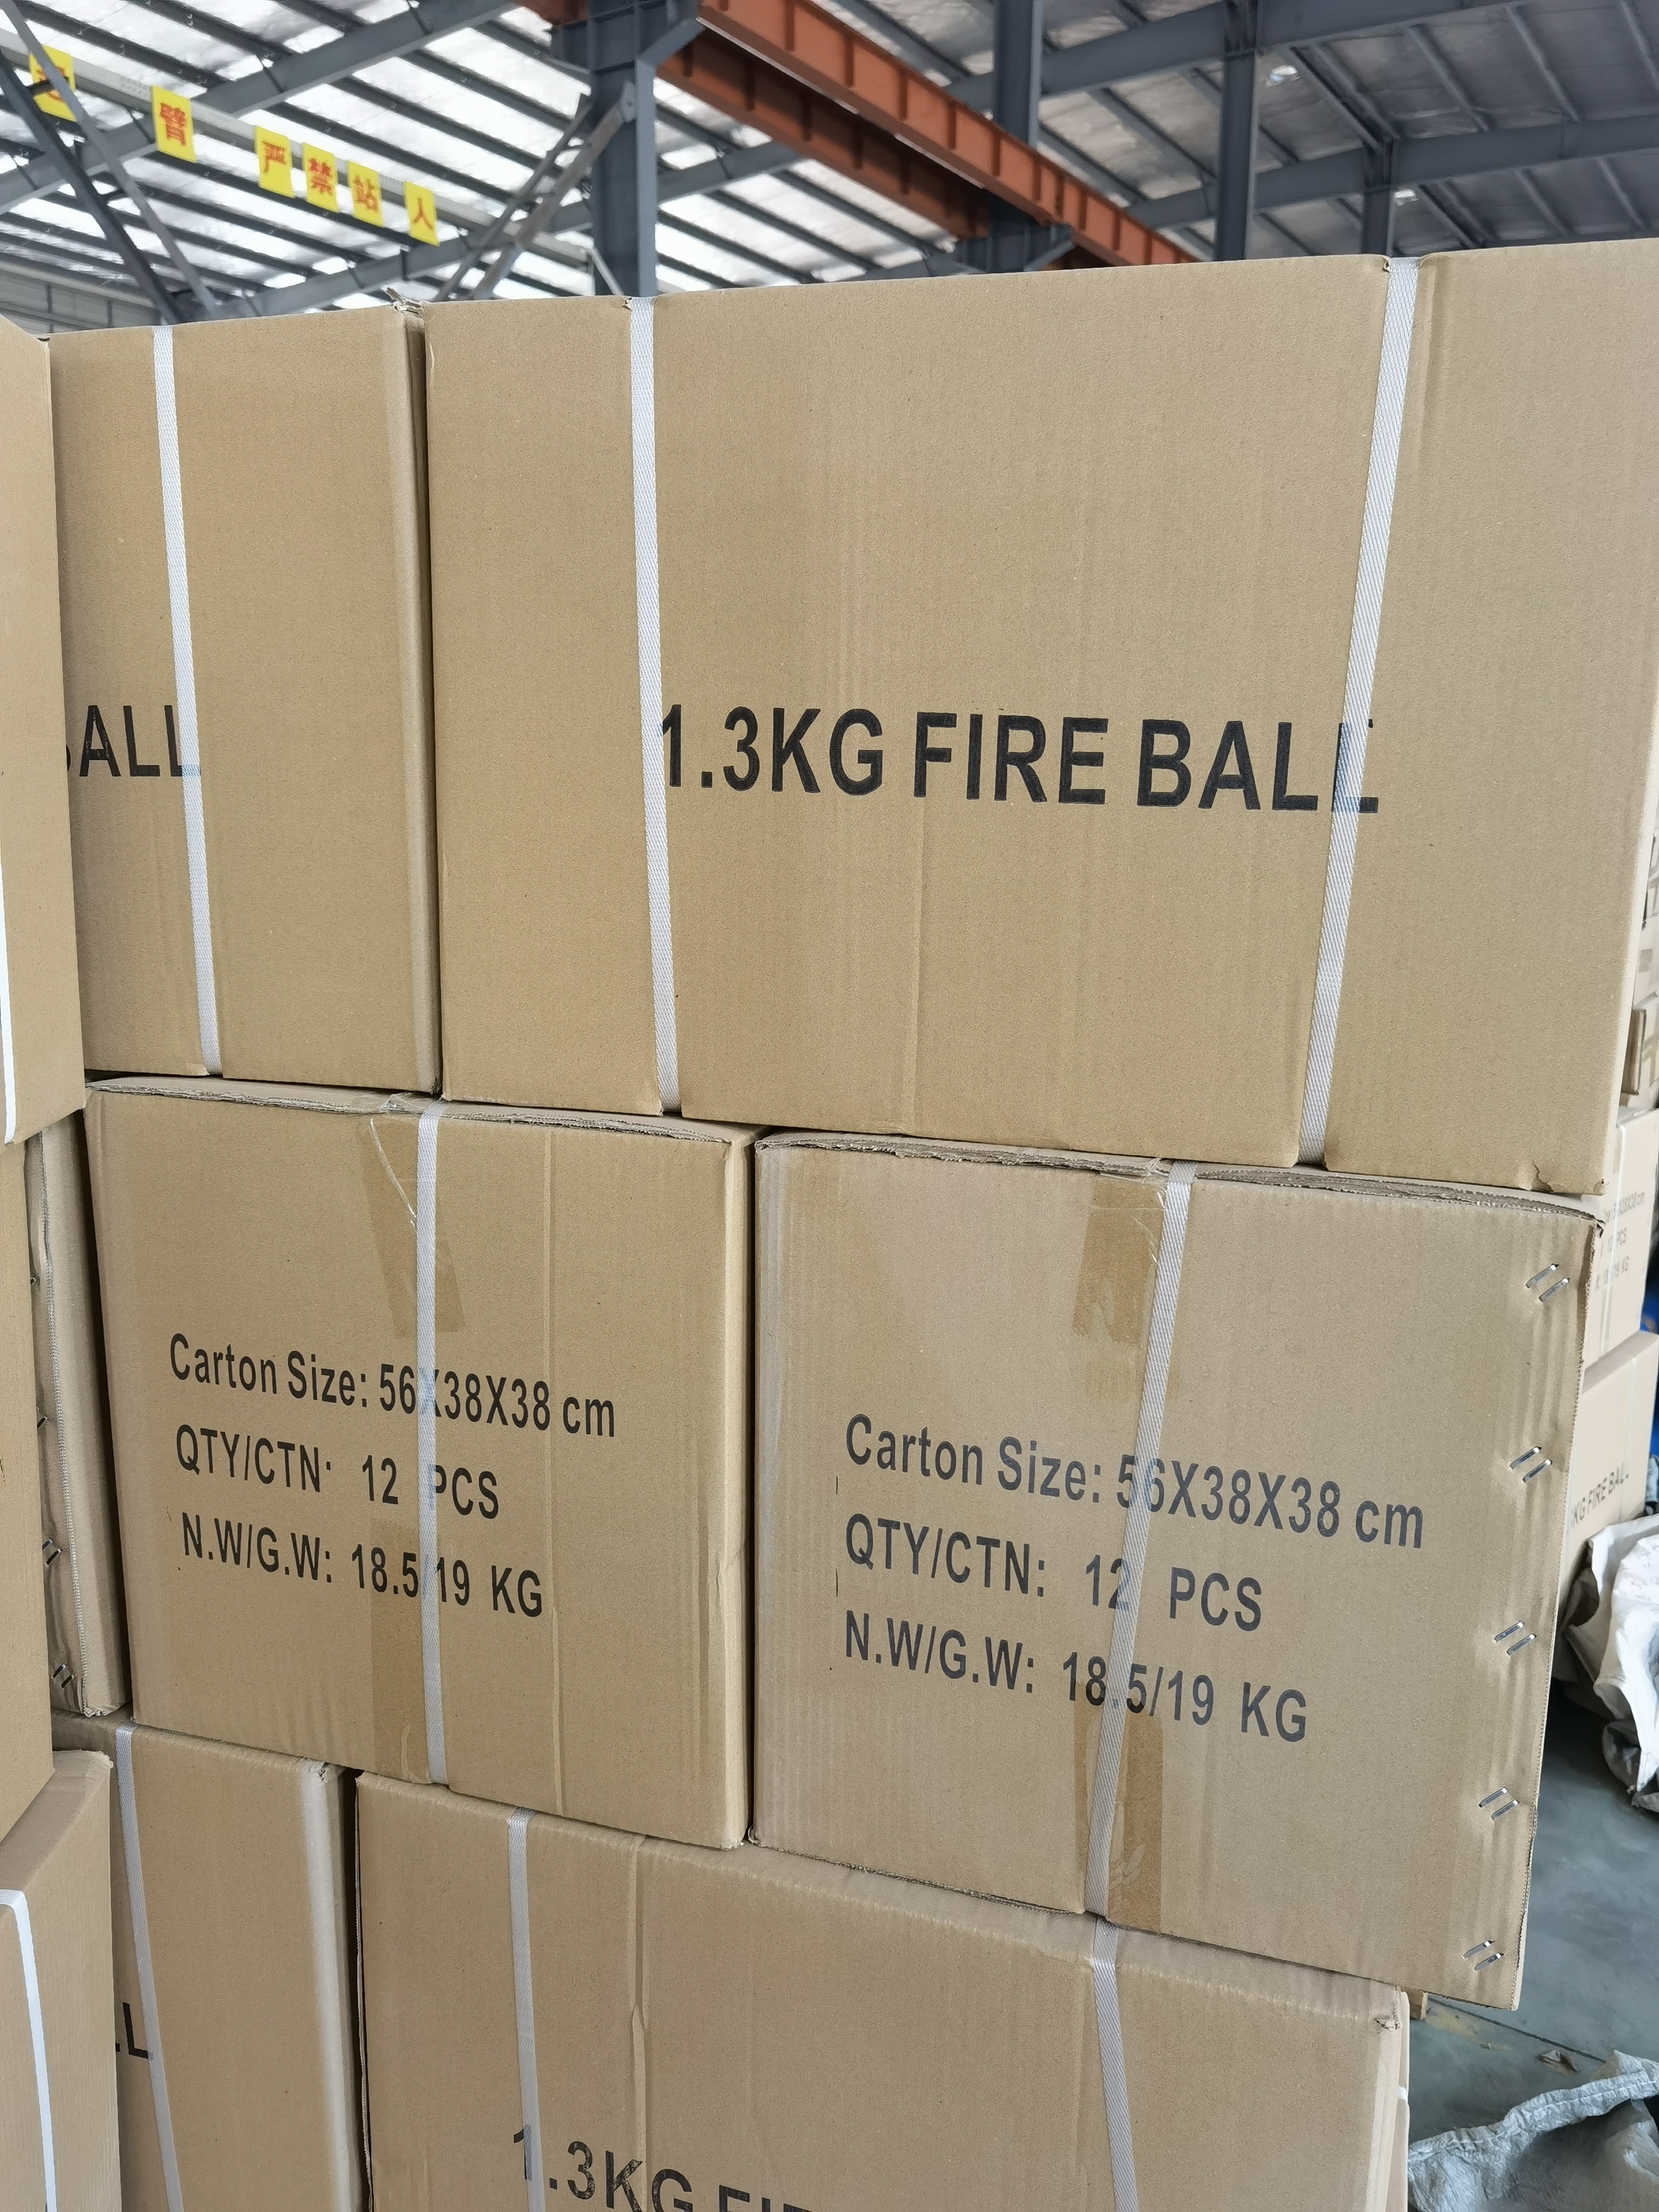 Ofis Güvenliği İçin Güvenli El Tipi Yangın Söndürme Topu